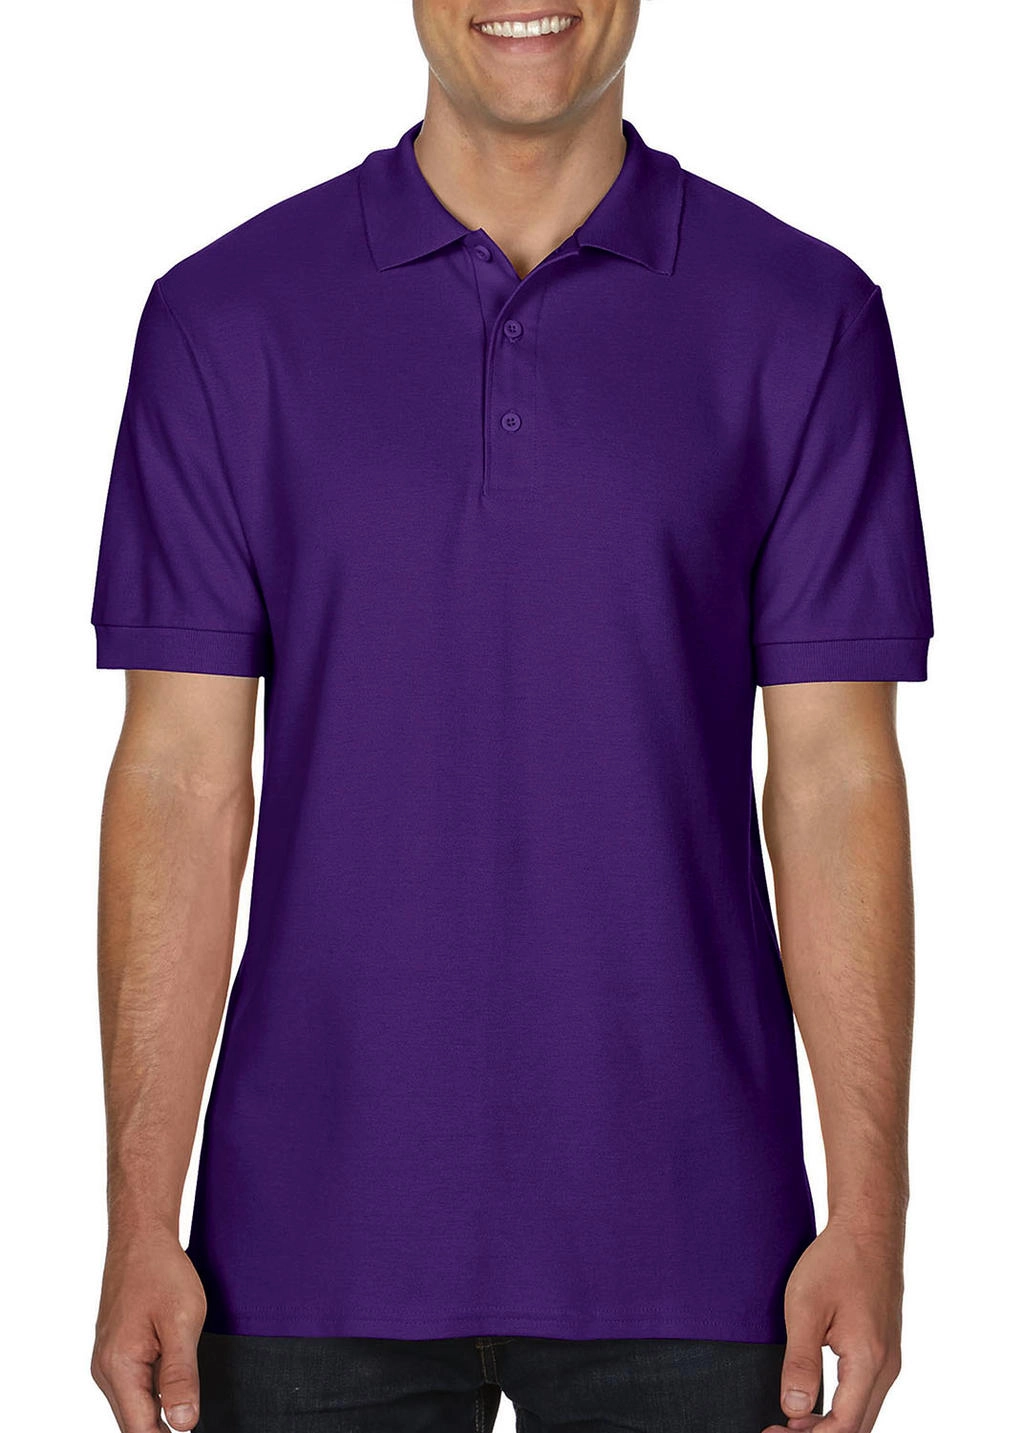 Premium Cotton Double Piqué Polo zum Besticken und Bedrucken in der Farbe Purple mit Ihren Logo, Schriftzug oder Motiv.